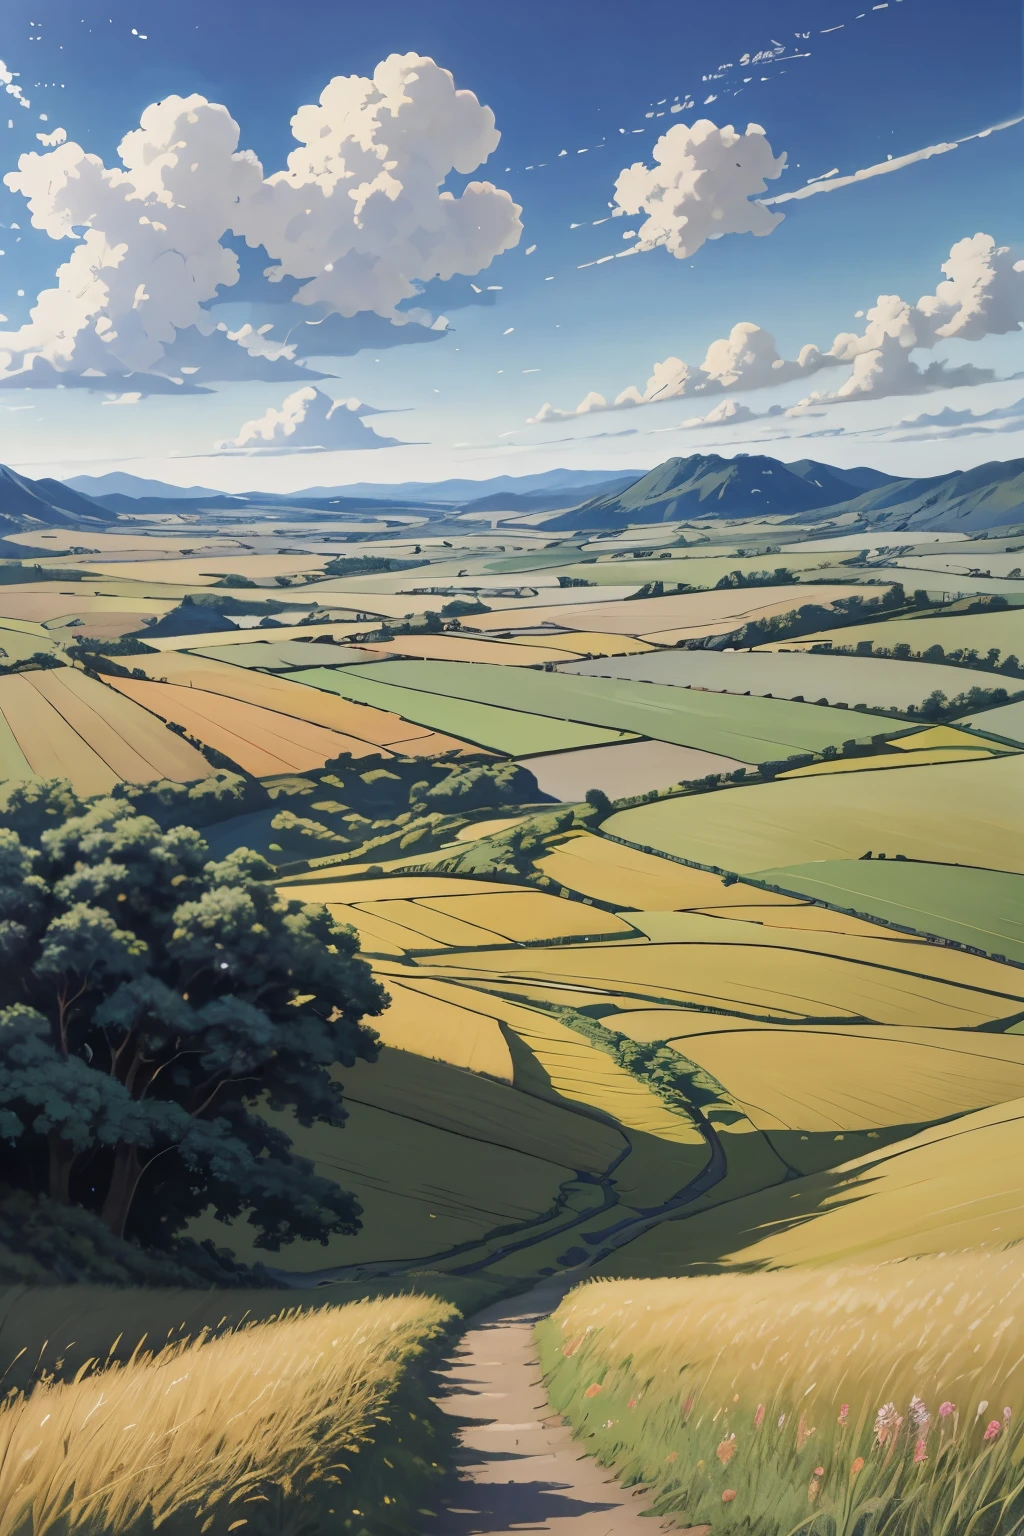 實際的, 真實的, 美麗驚豔的風景油畫 吉卜力工作室 宮崎駿 花瓣 草原 藍天 草原 鄉村小路,大樓, 